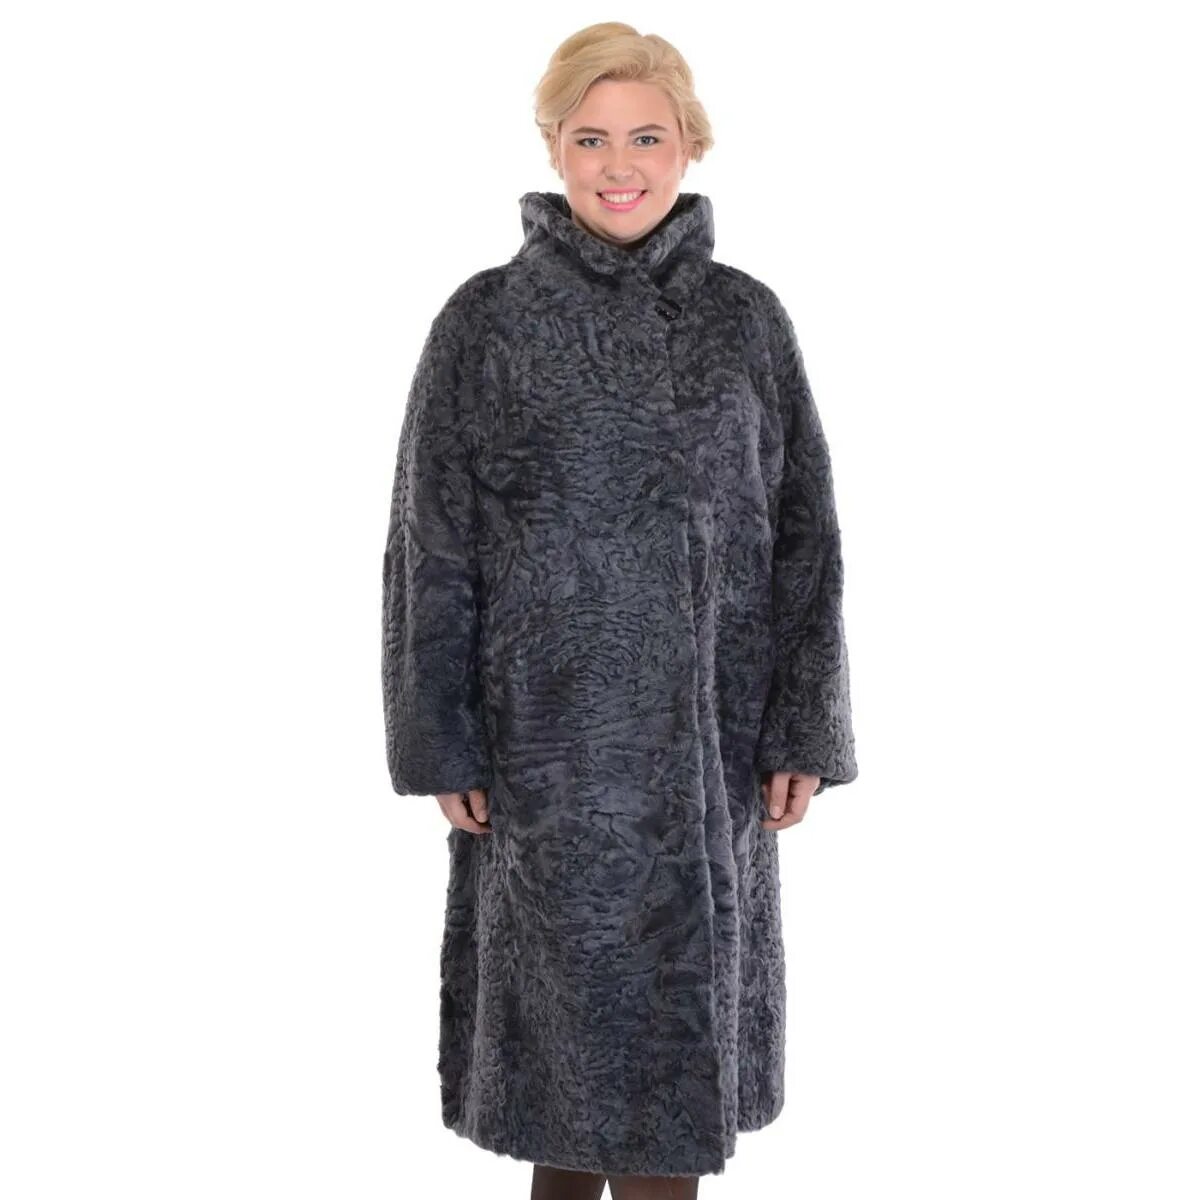 Шуба Каляев Барбара. Каляев пальто женское. Пальто Каляев, размер56, кэмел. Каляев шубы из овчины.